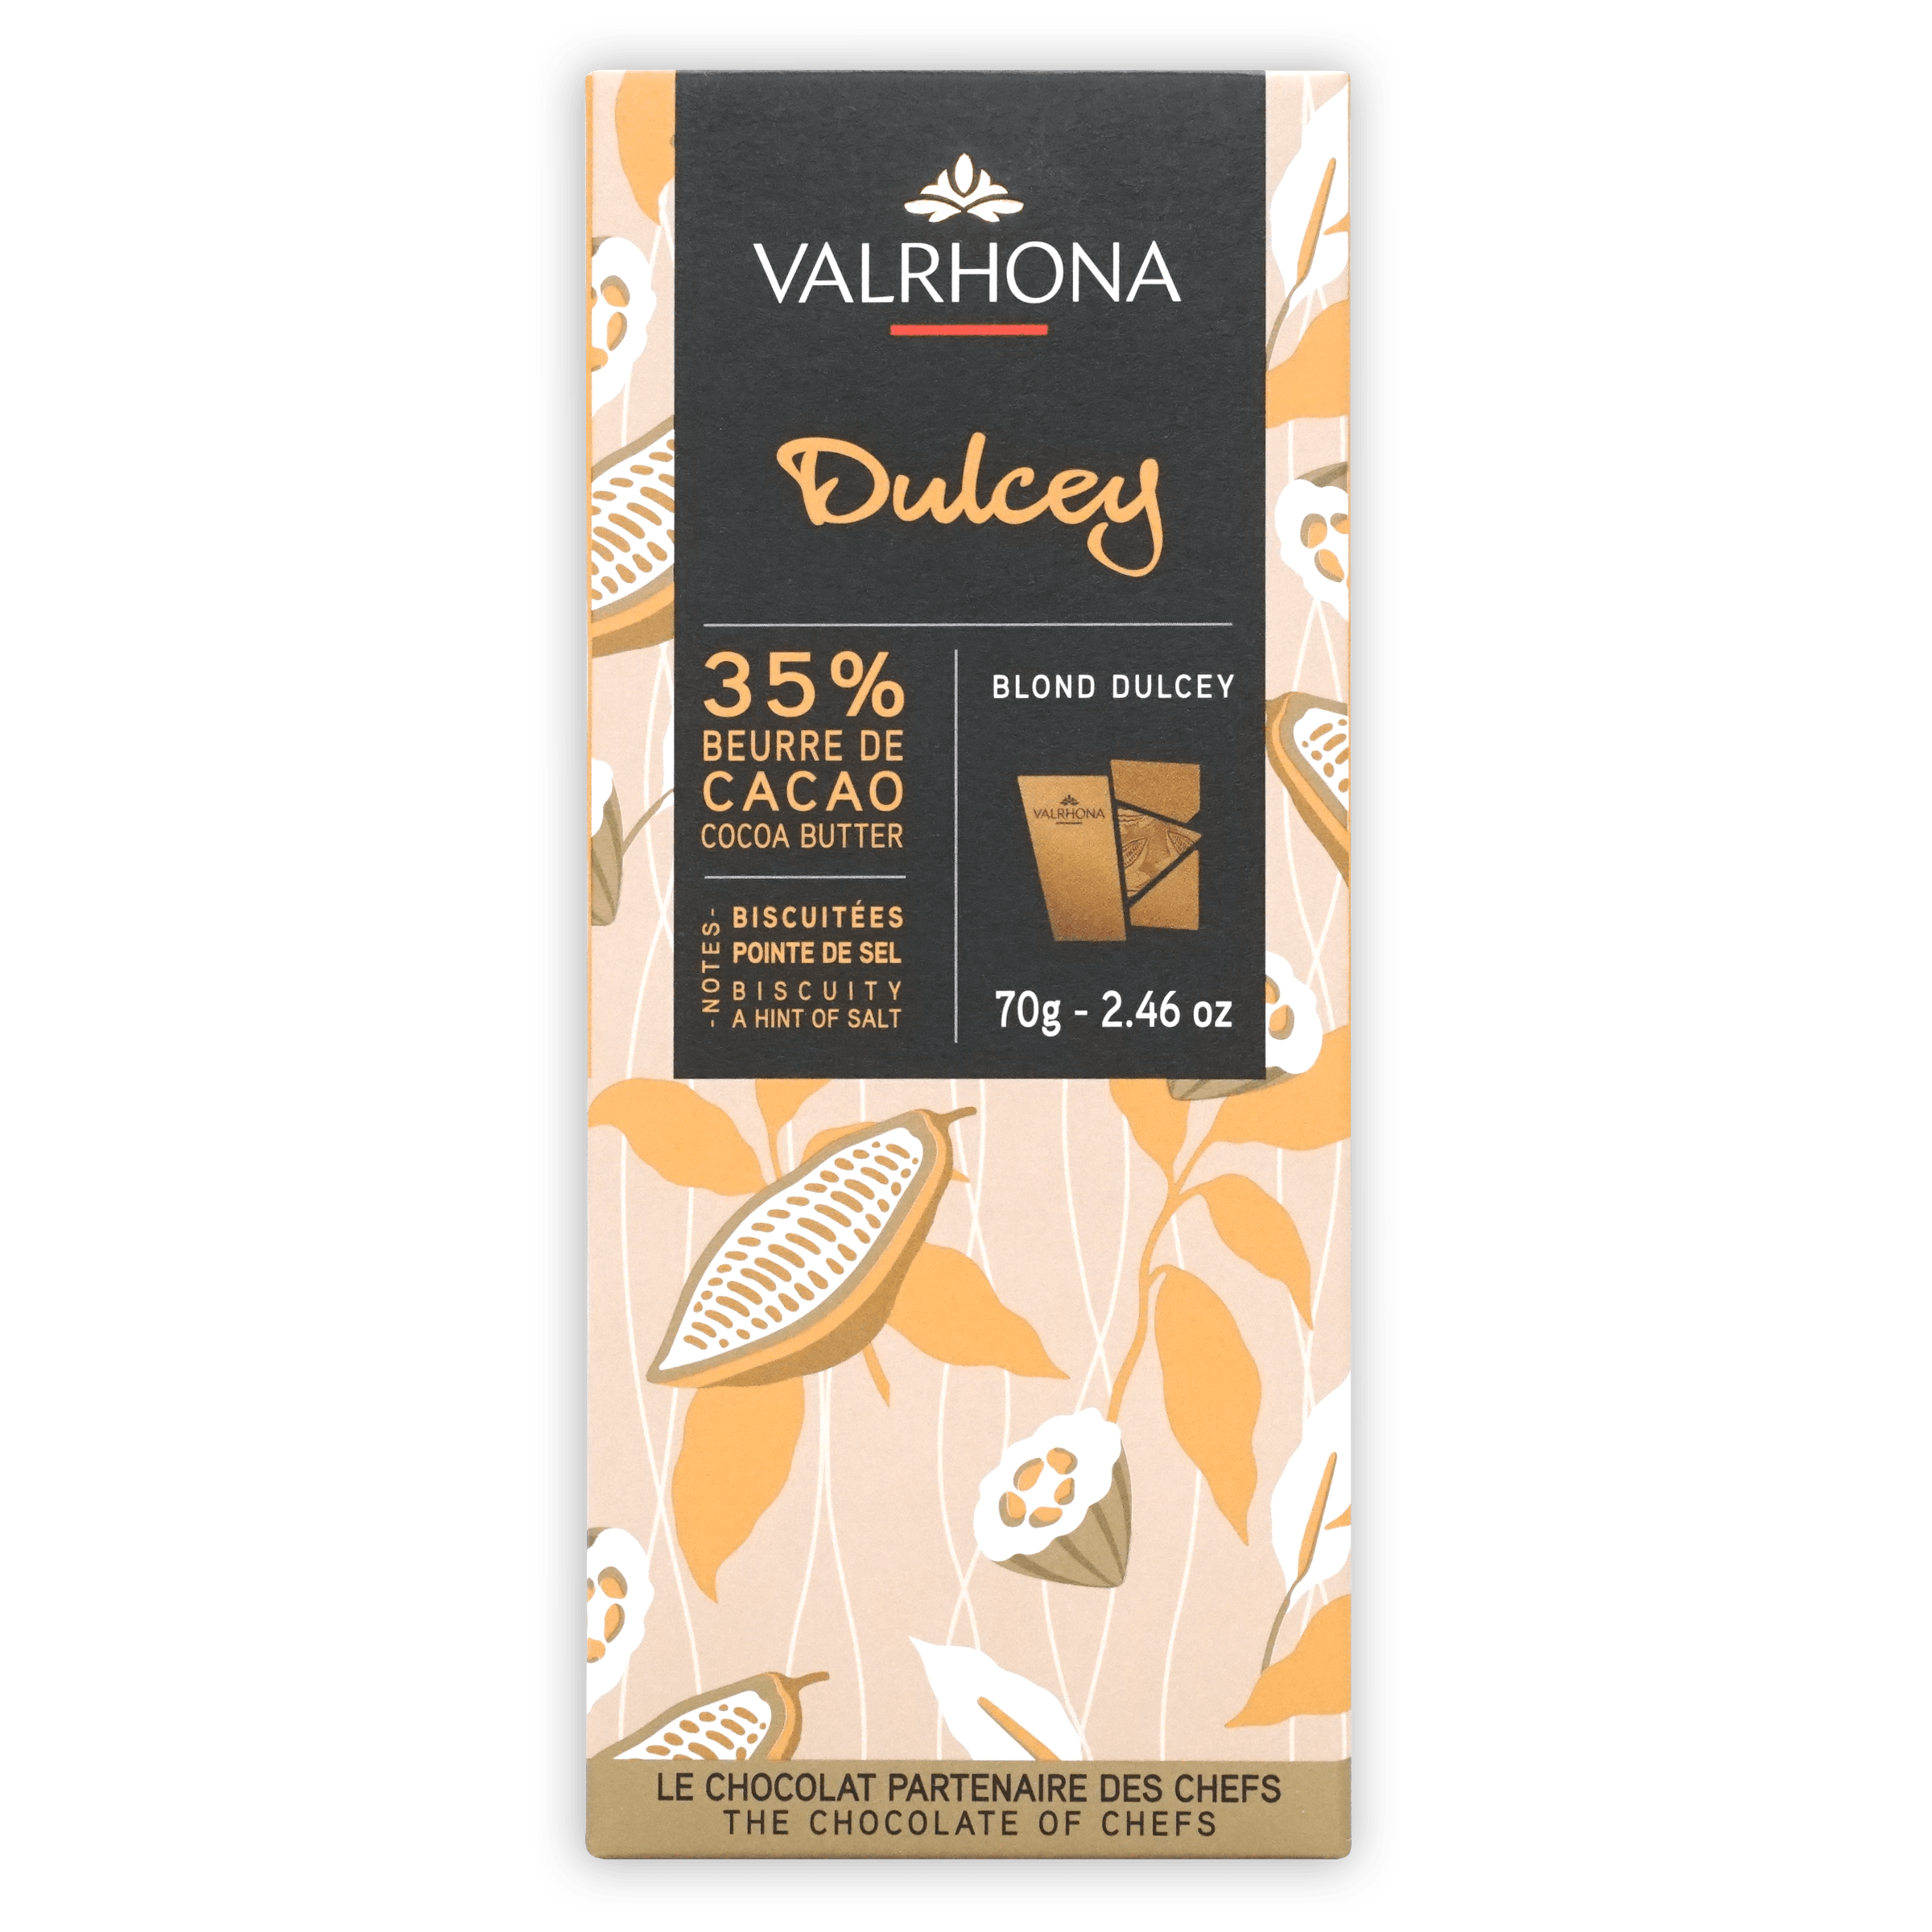 Buy Valrhona Chocolate Dulcey 35% Feves - 3 kg at Ubuy India